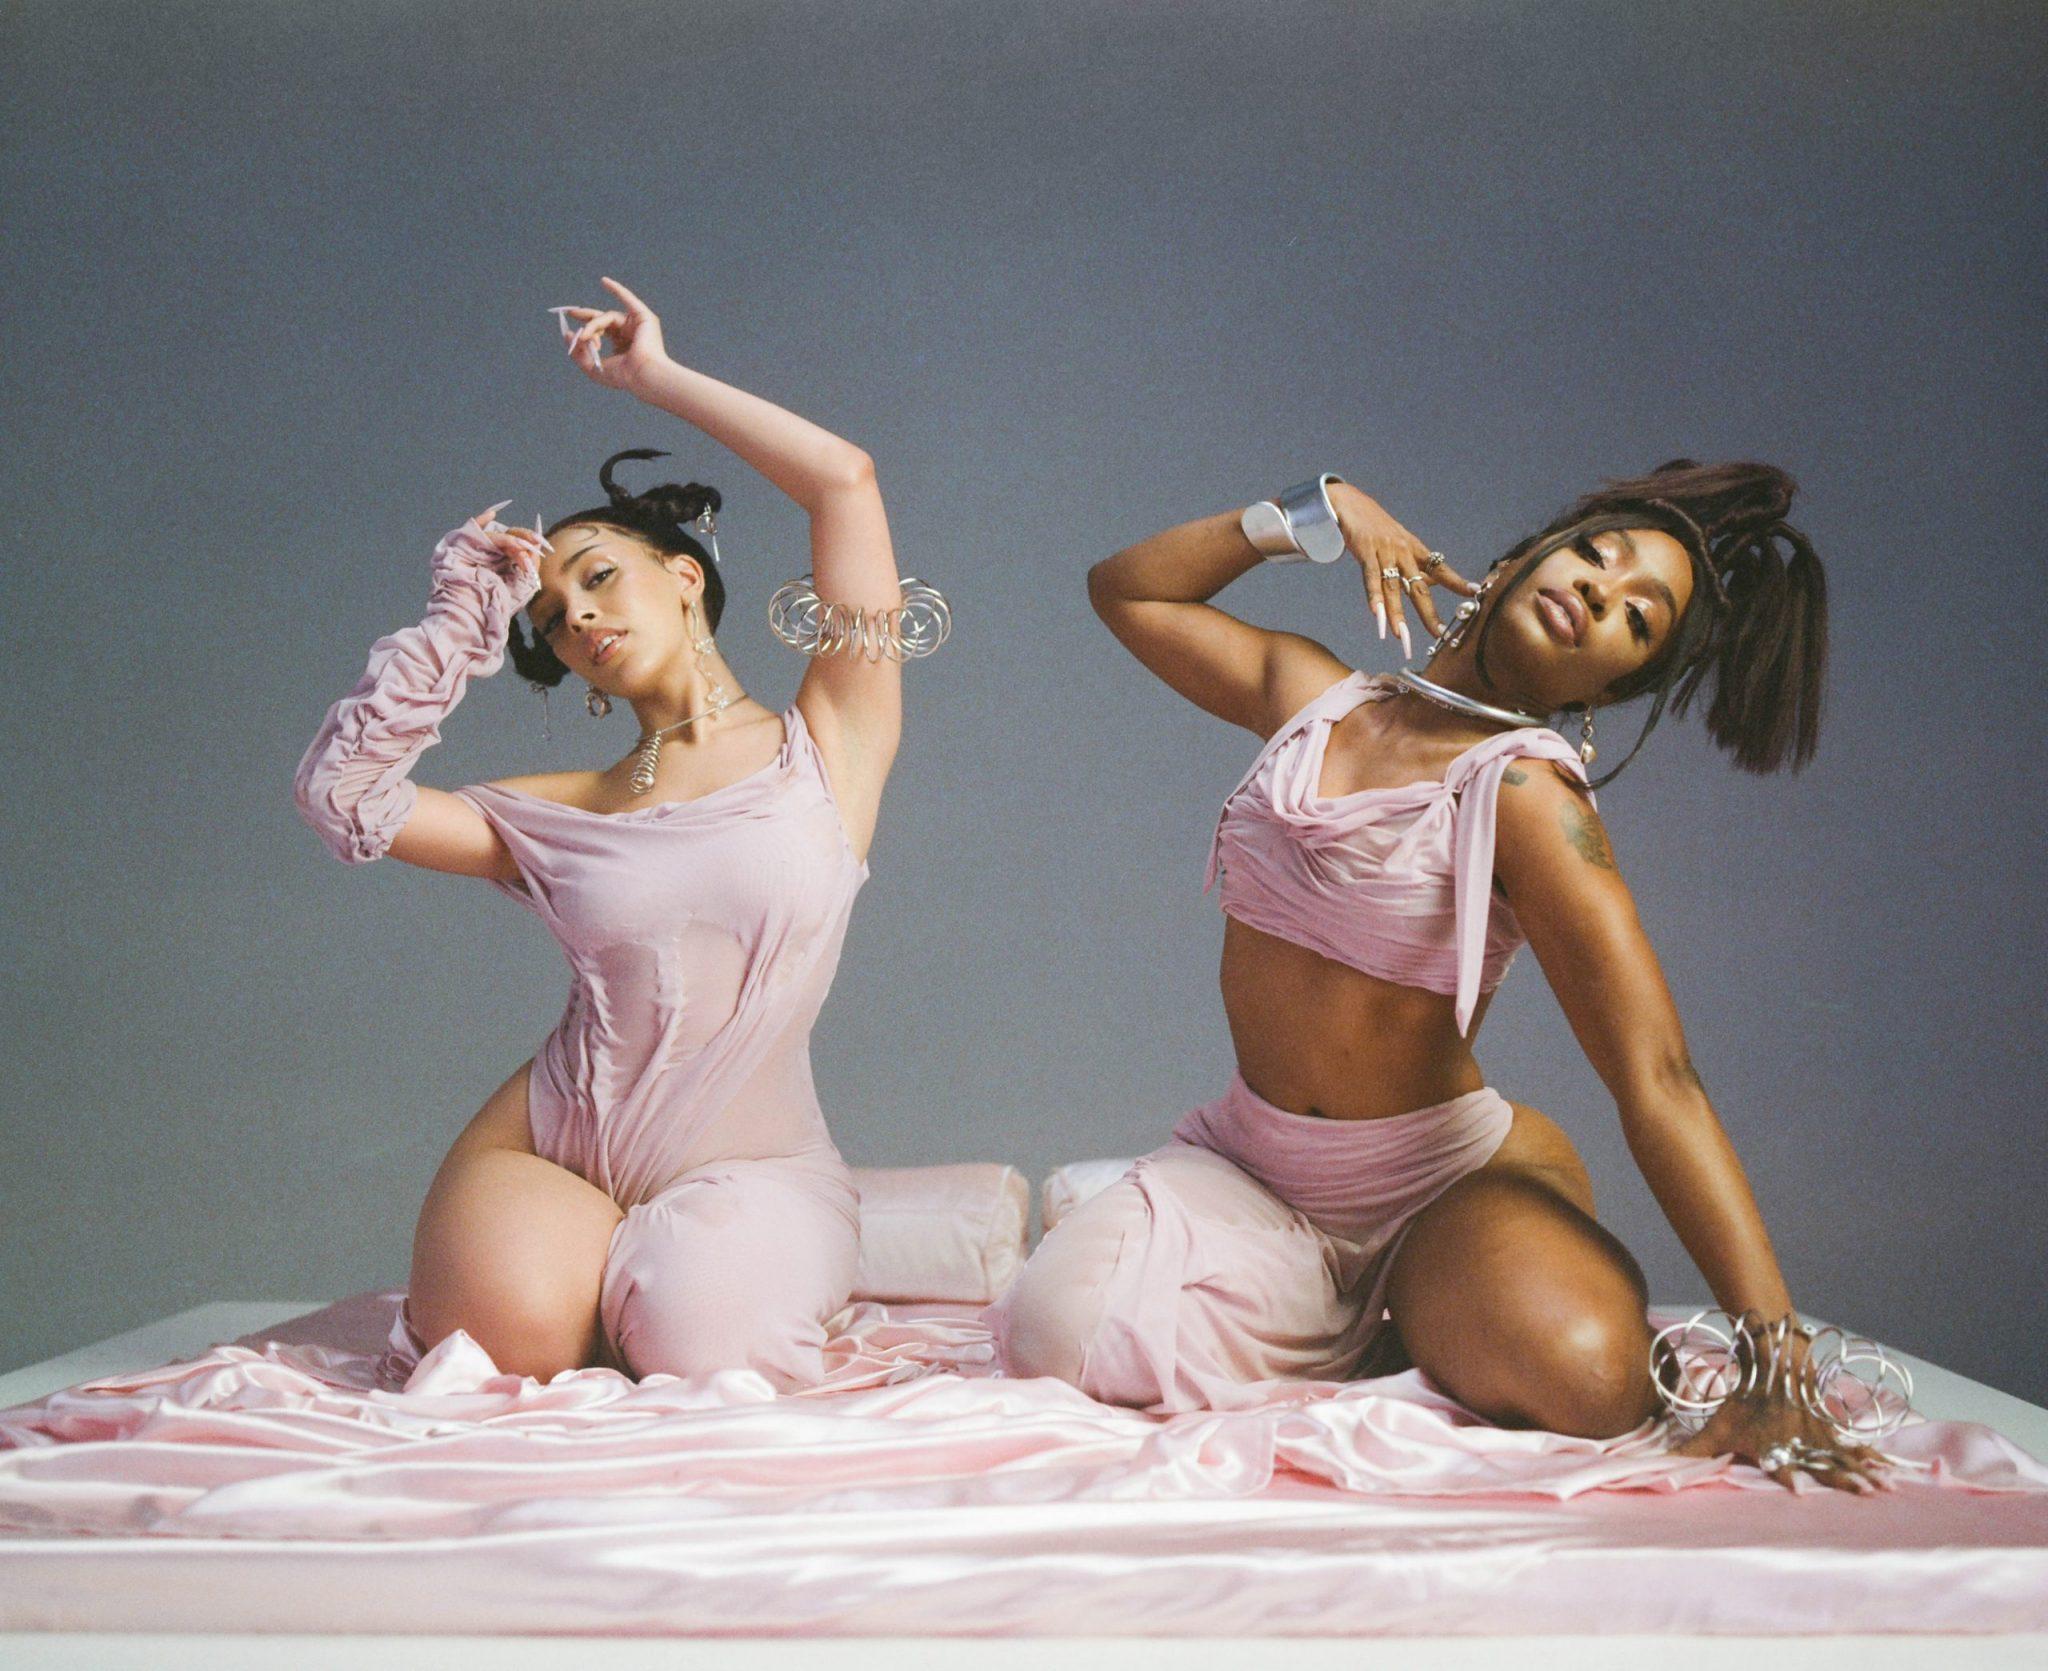 Fotografia da produção do clipe da música Kiss Me More, da cantora Doja Cat em parceria com SZA. A foto mostra as cantoras, duas mulheres negras de cabelos e olhos castanhos, vestindo roupas cor de rosa, sentadas em uma cama.